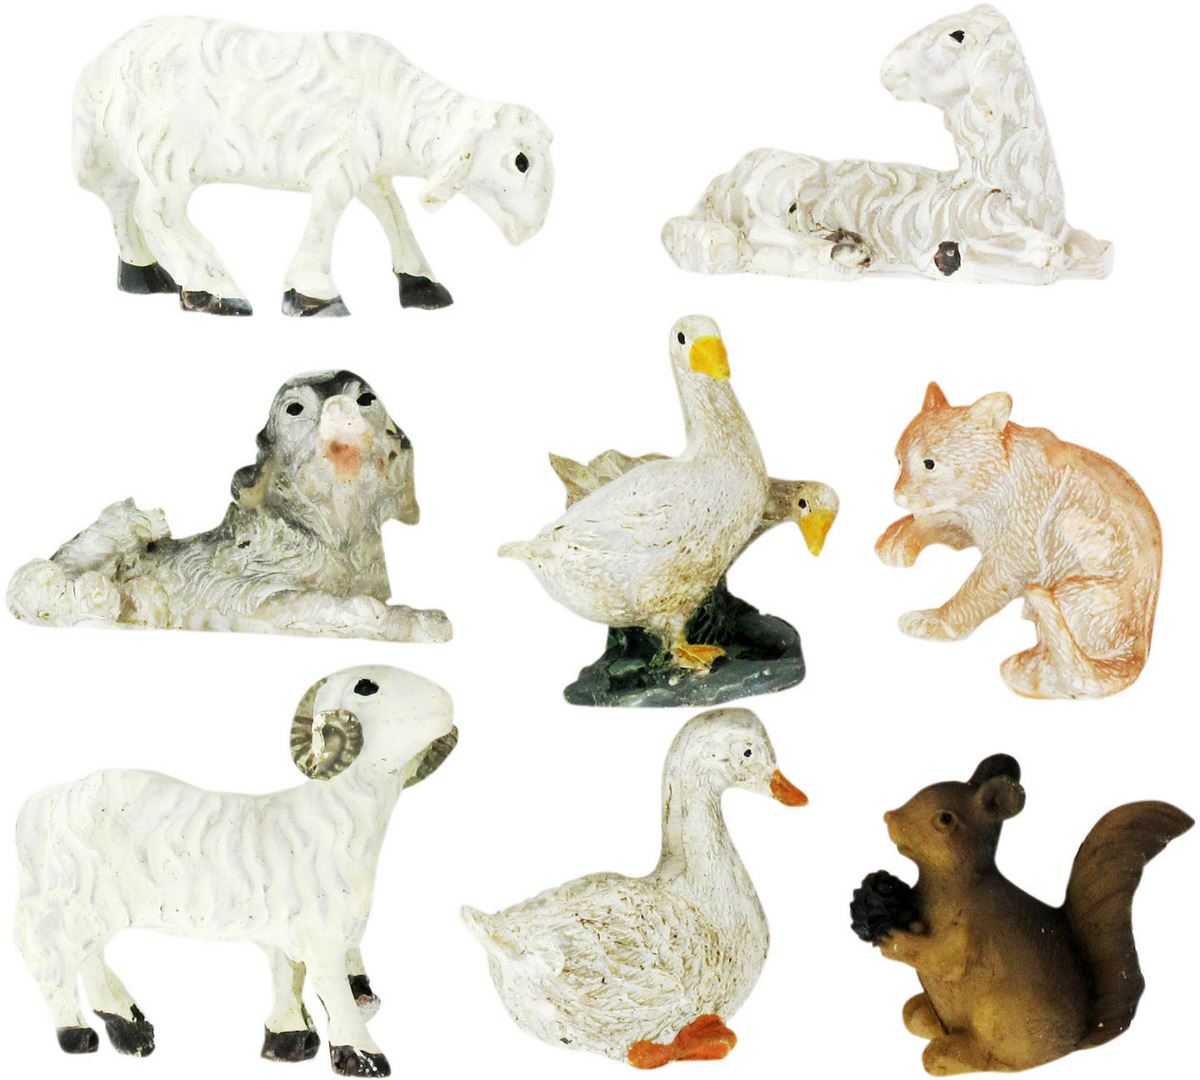 statuine animali presepe: set 8 statuette pecore, cane, oche, gatto, scoiattolo, in resina dipinta a mano (circa 2,5 cm)